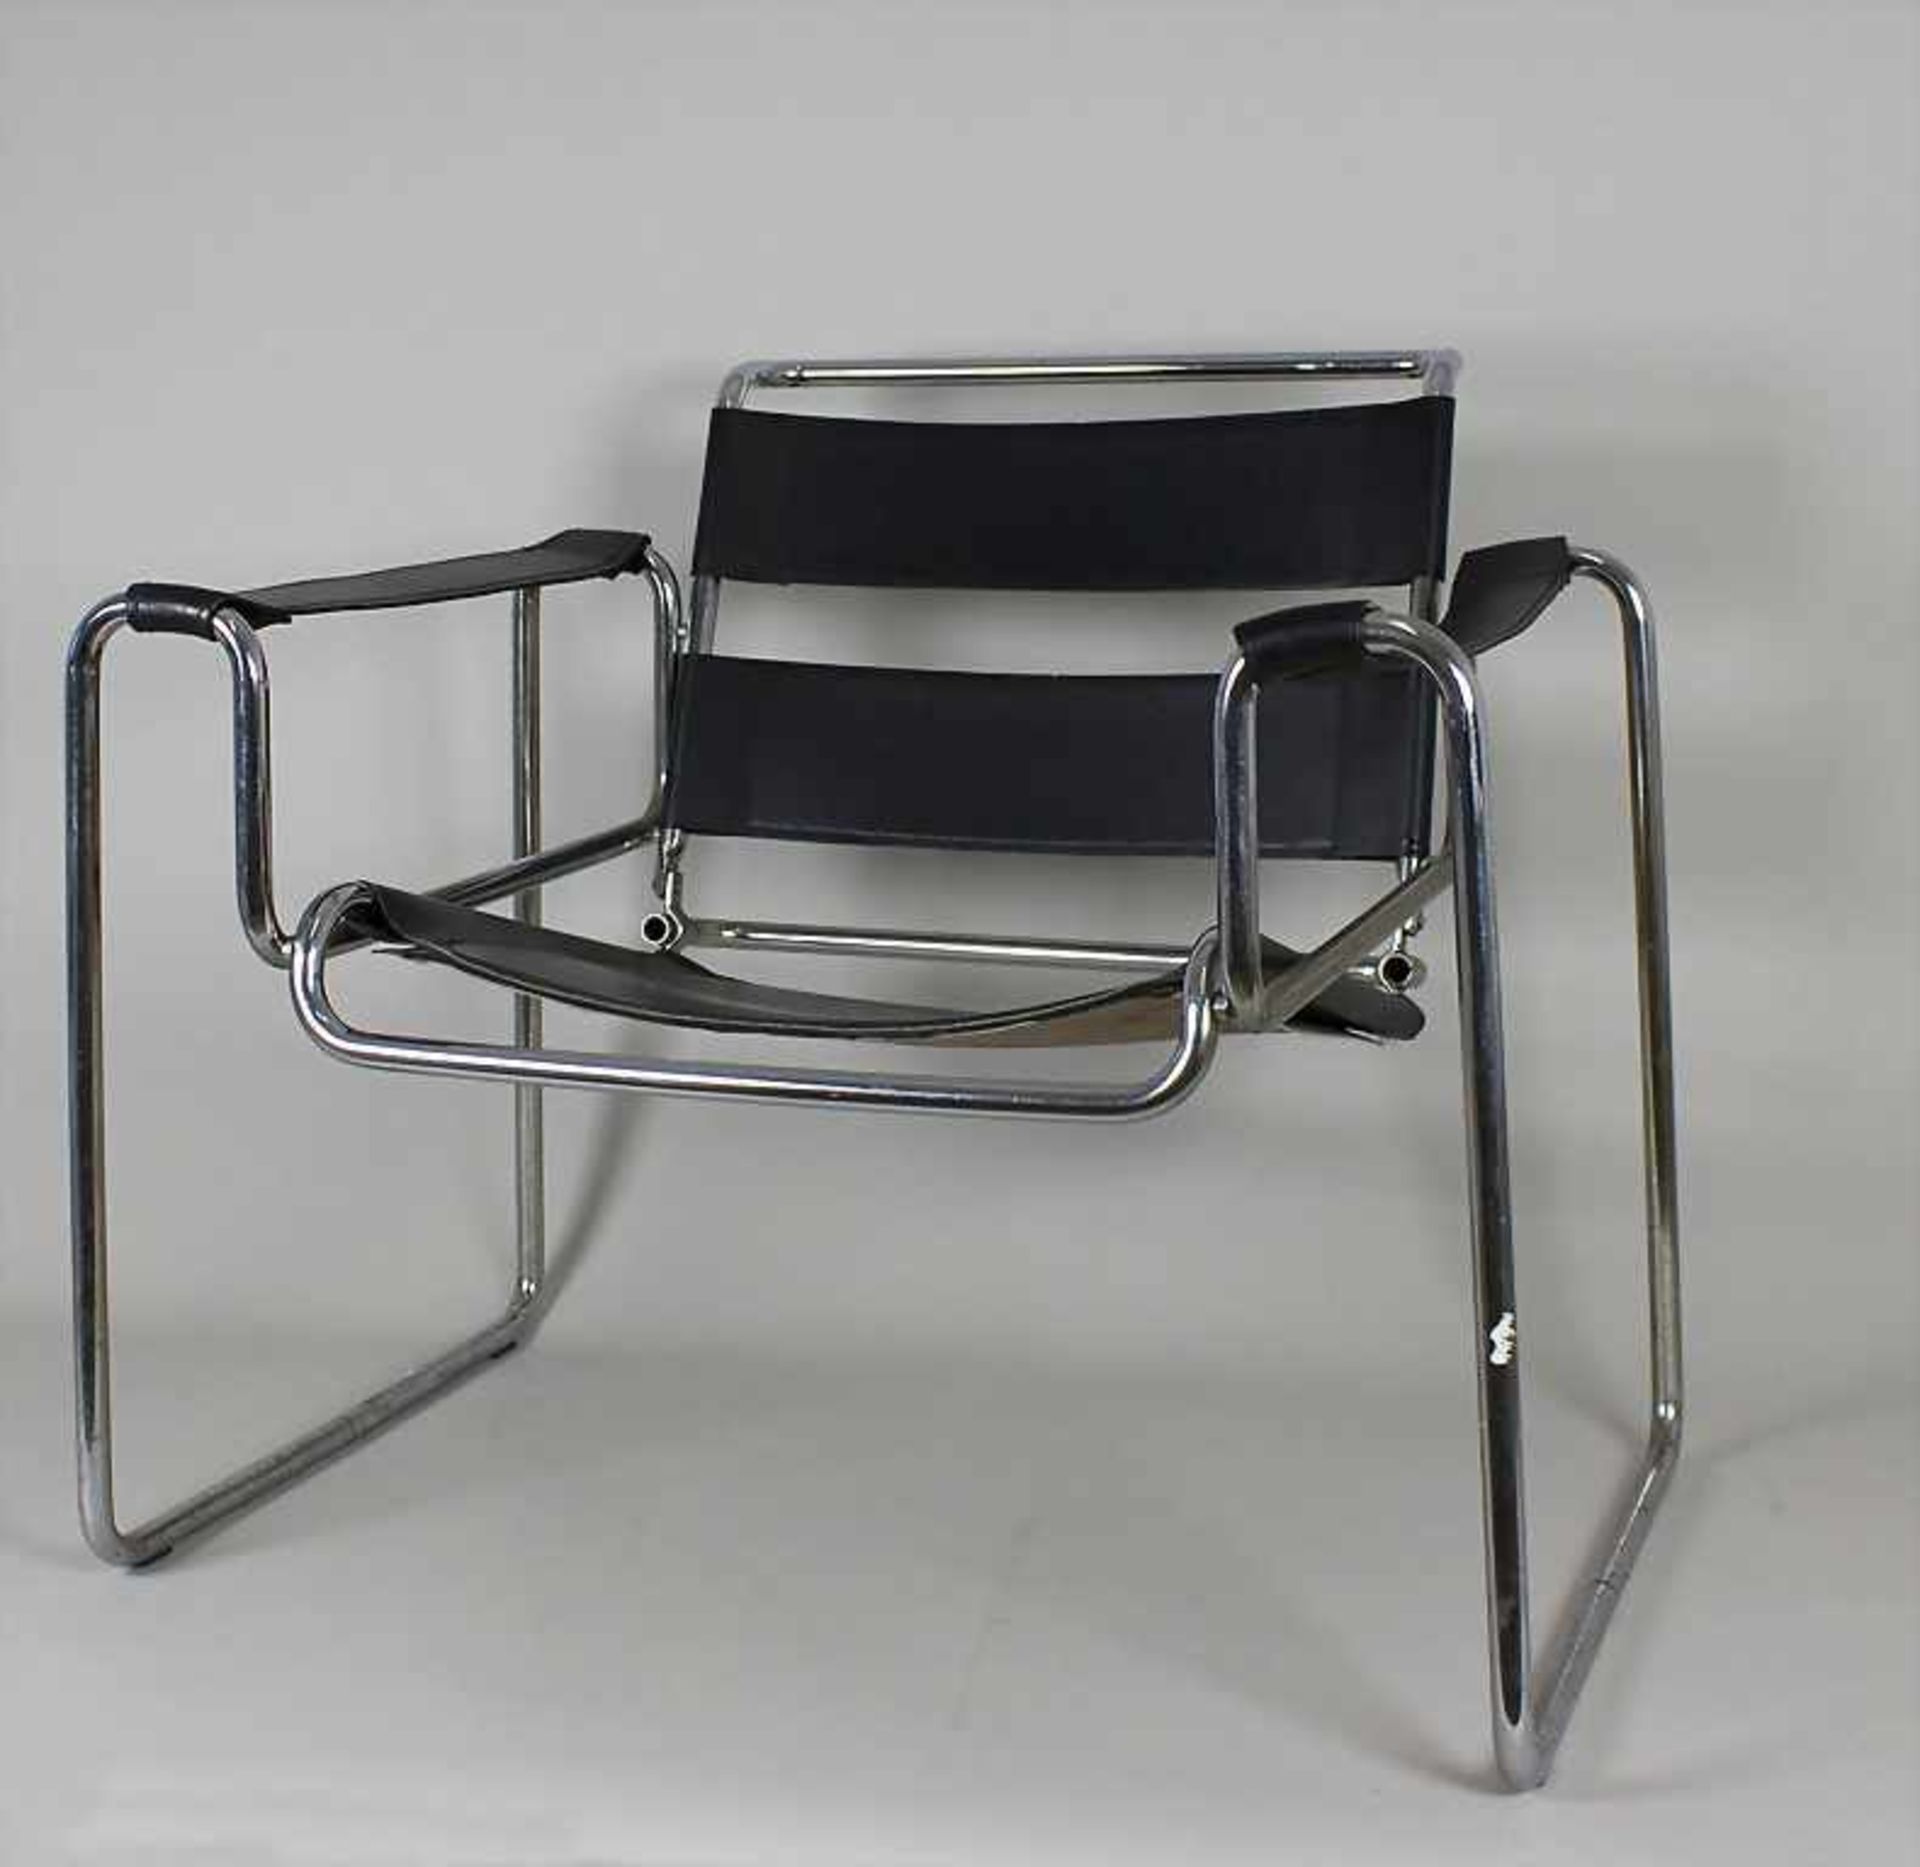 3 Armlehnstühle im Stil des 'Wassily-Chair' von Marcel Breuer, Bauhausklassiker / 3 chairs in the